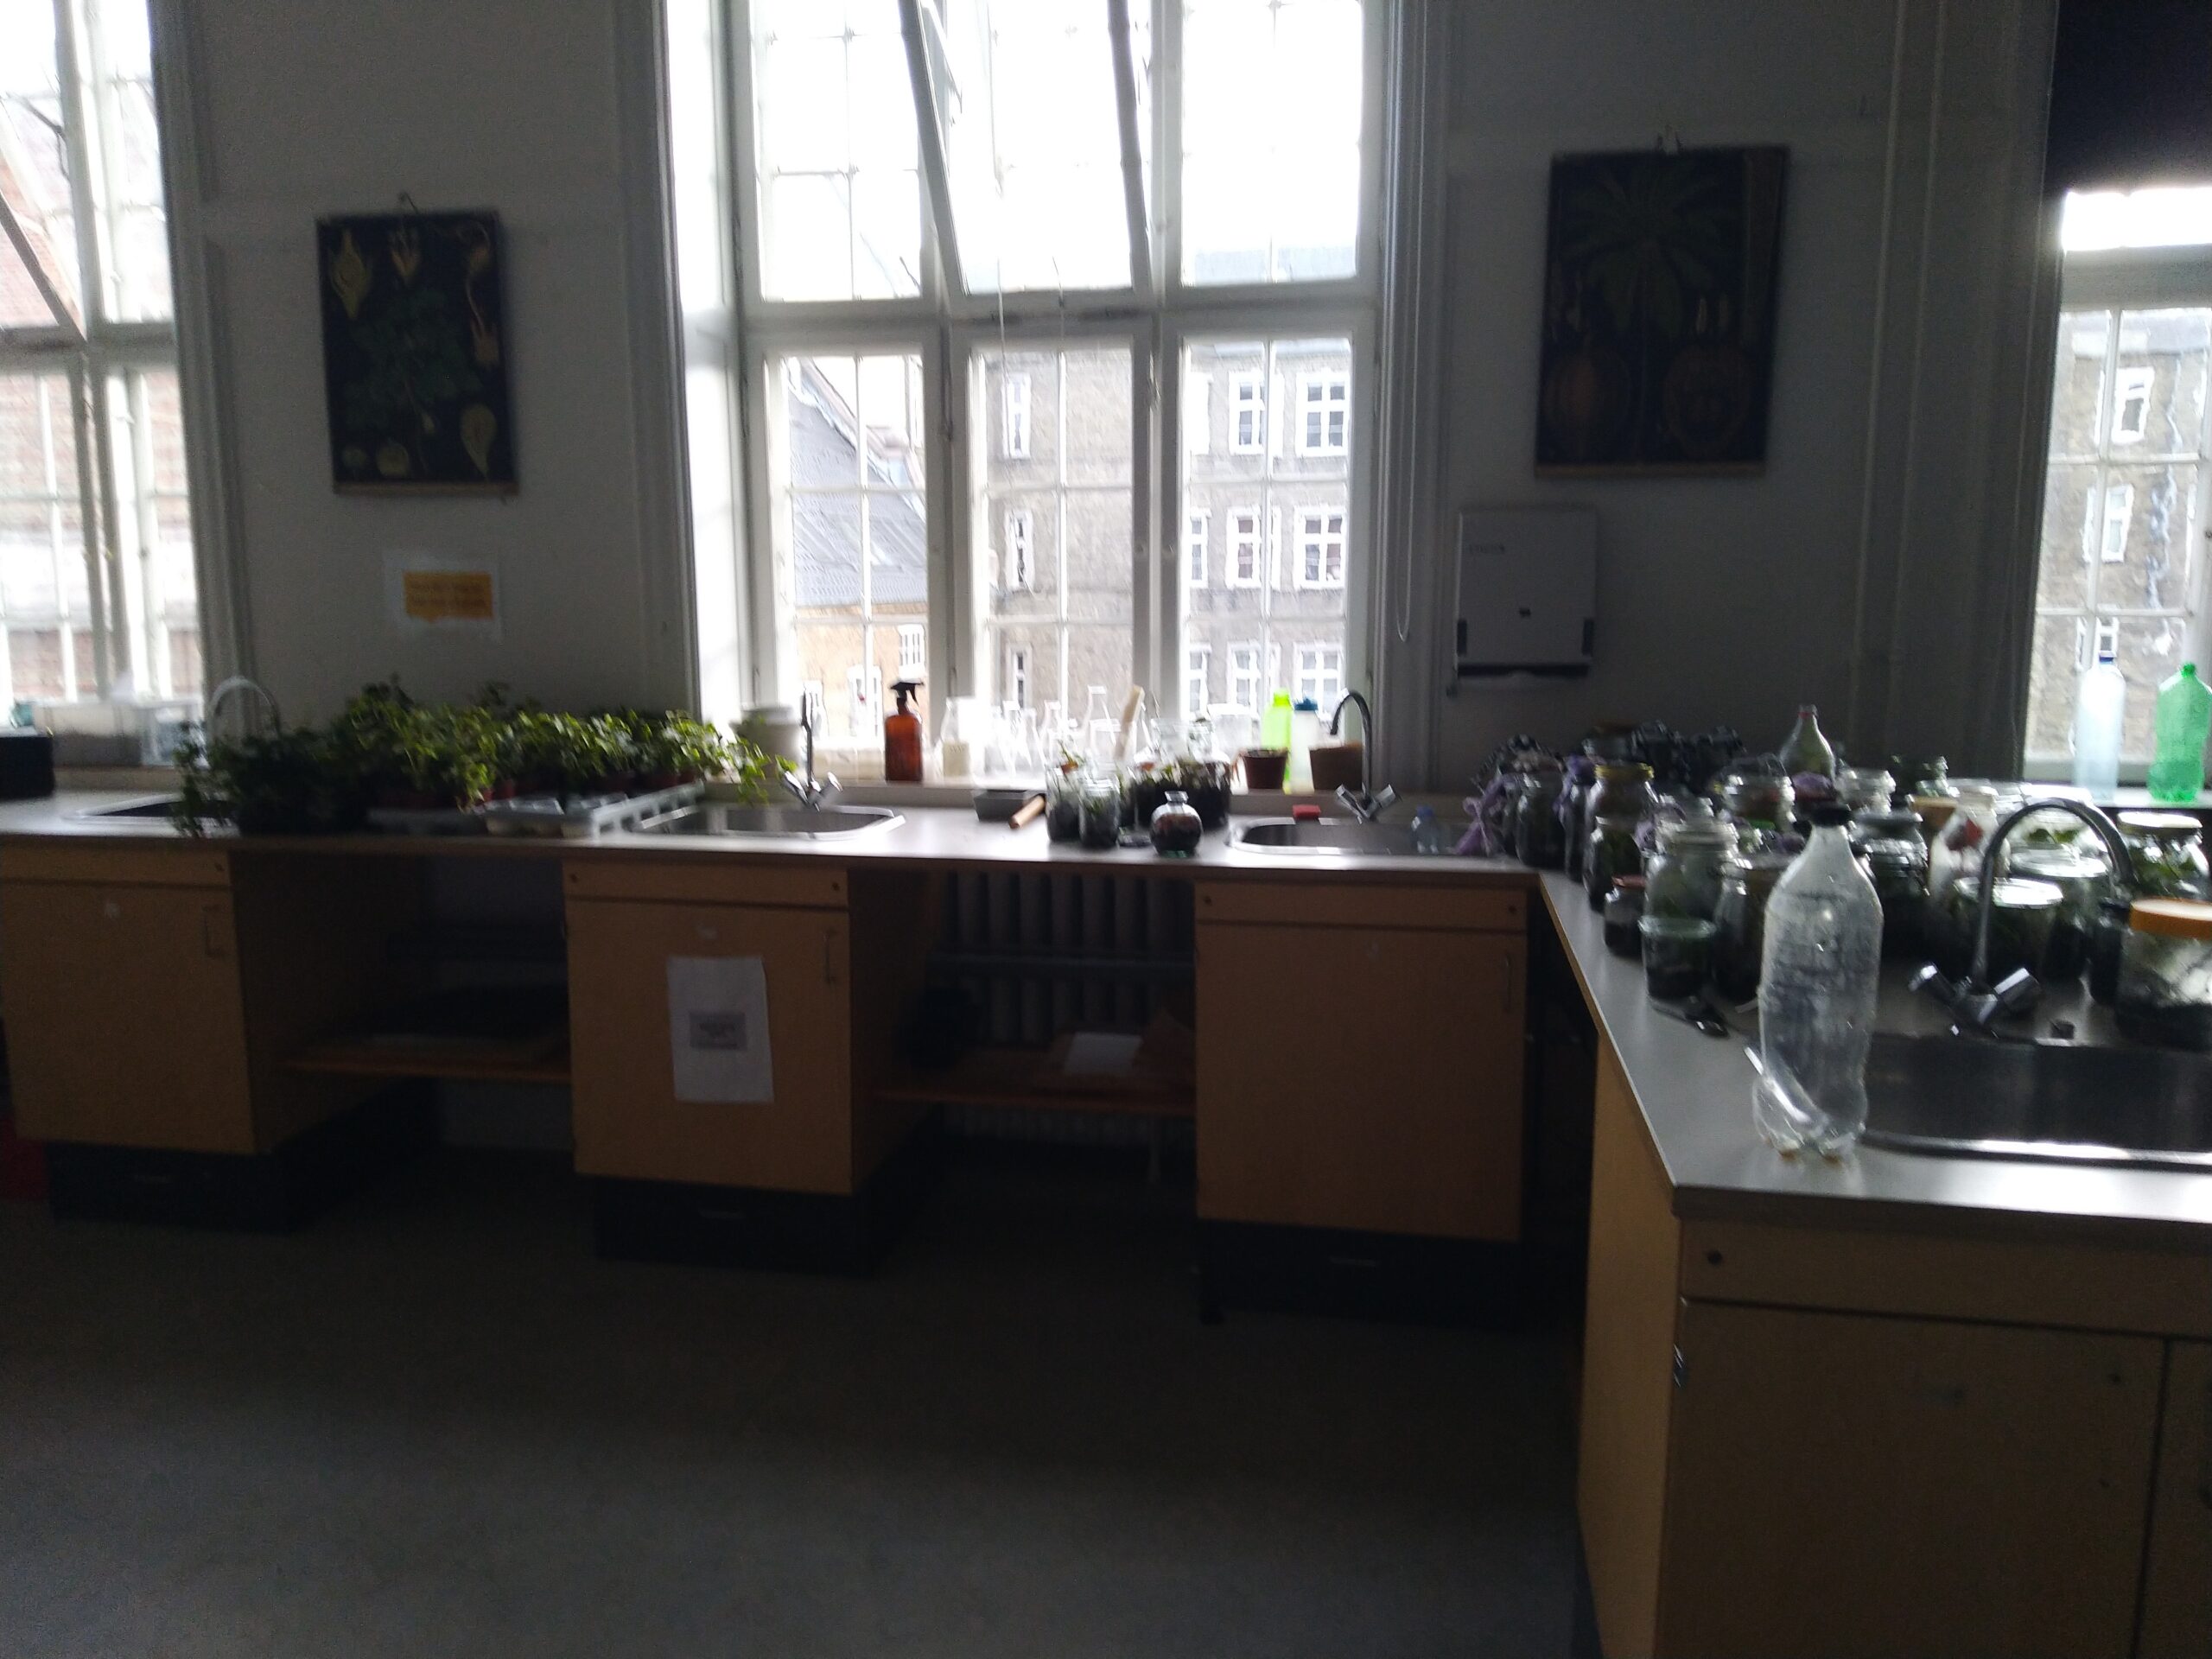 I natur/teknik er eleverne i fuld gang med at lave økosystemer i små glas.